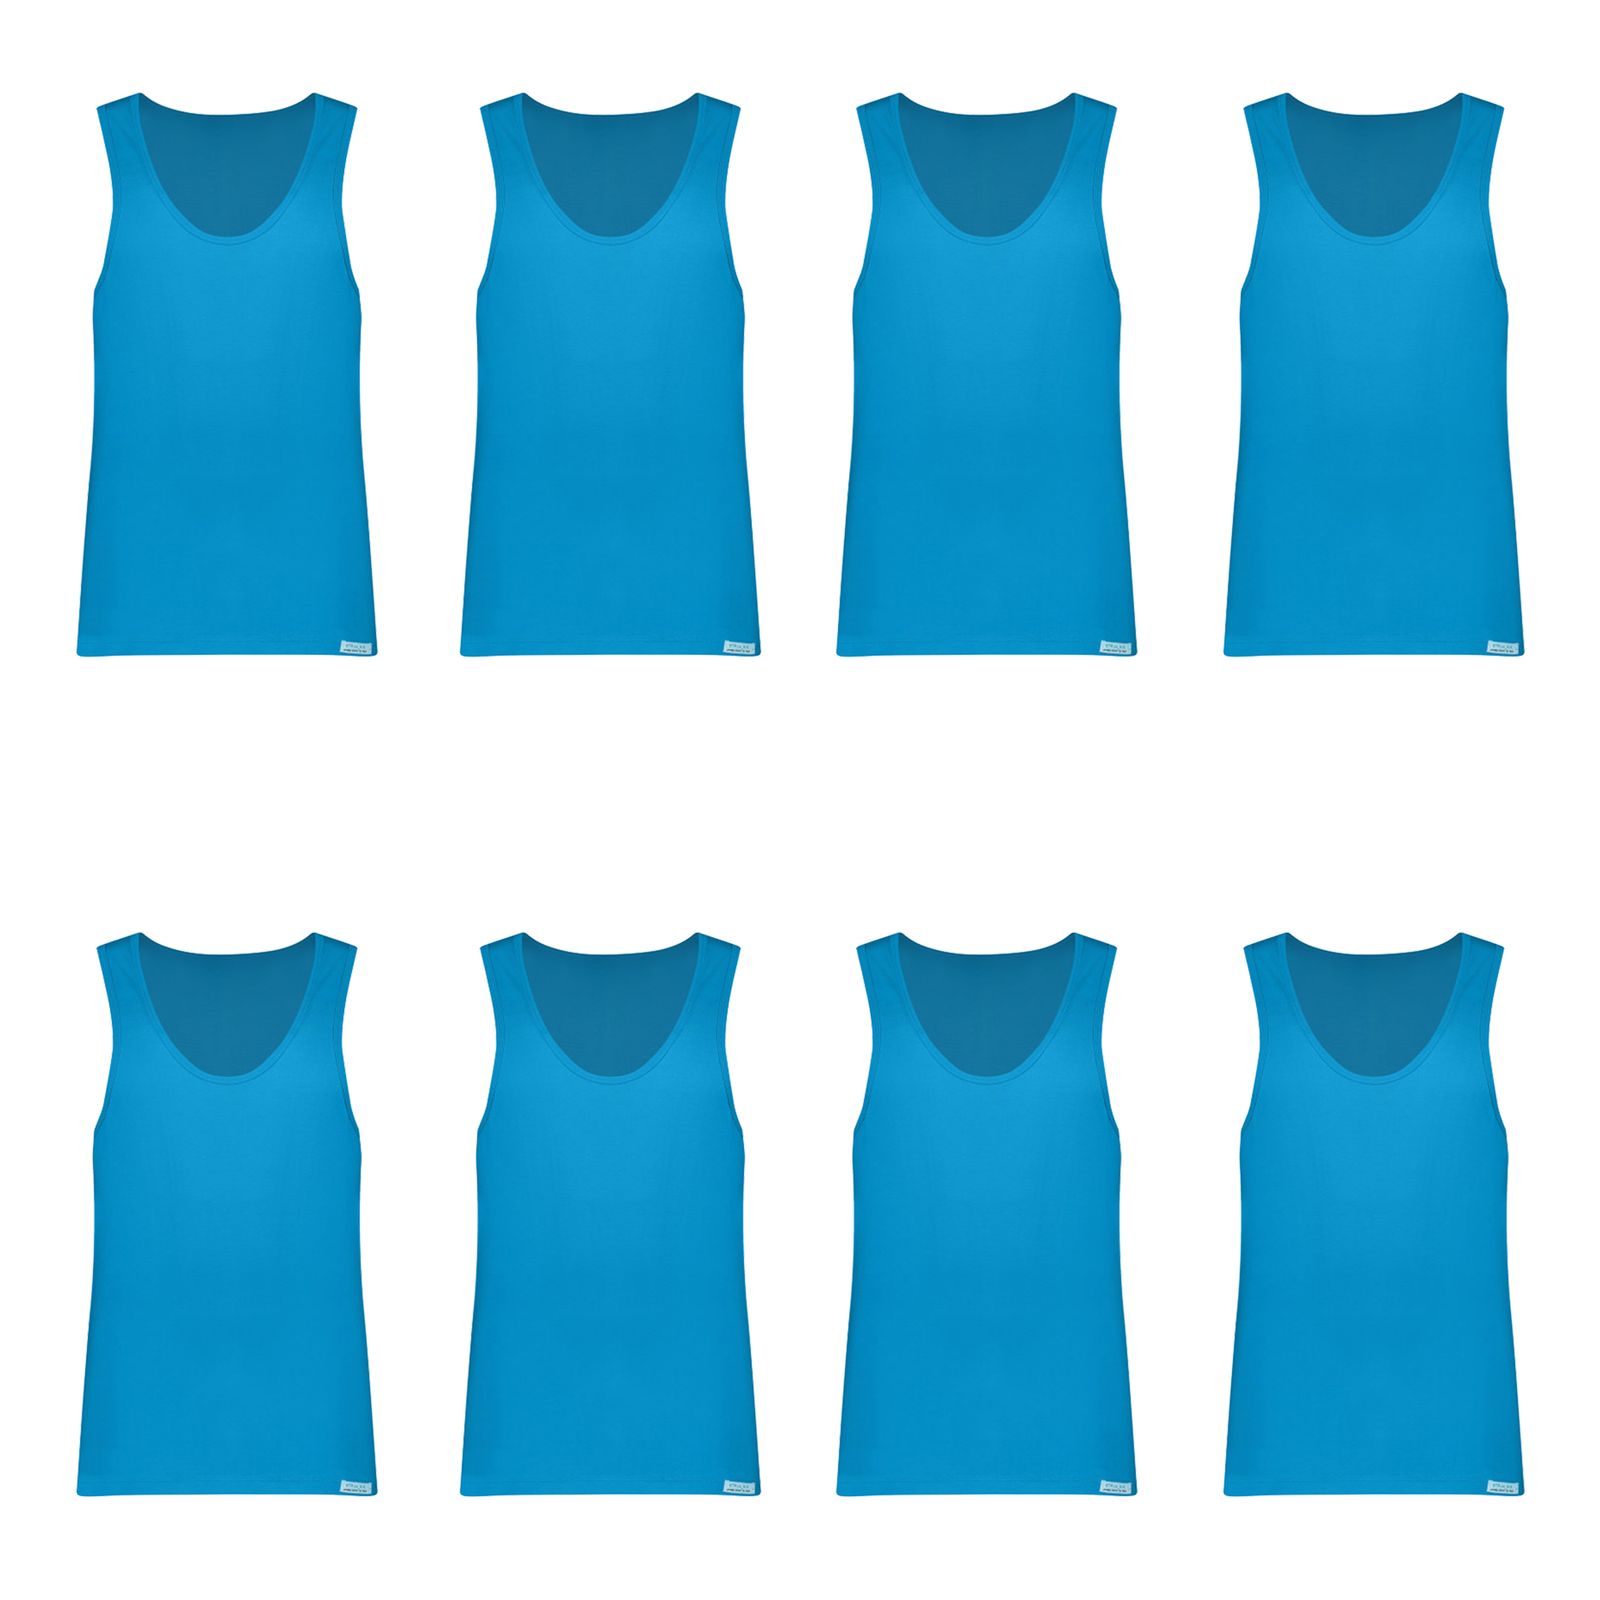  زیرپوش رکابی مردانه برهان تن پوش مدل 3-01 رنگ آبی فیروزه ای بسته 8 عددی -  - 1